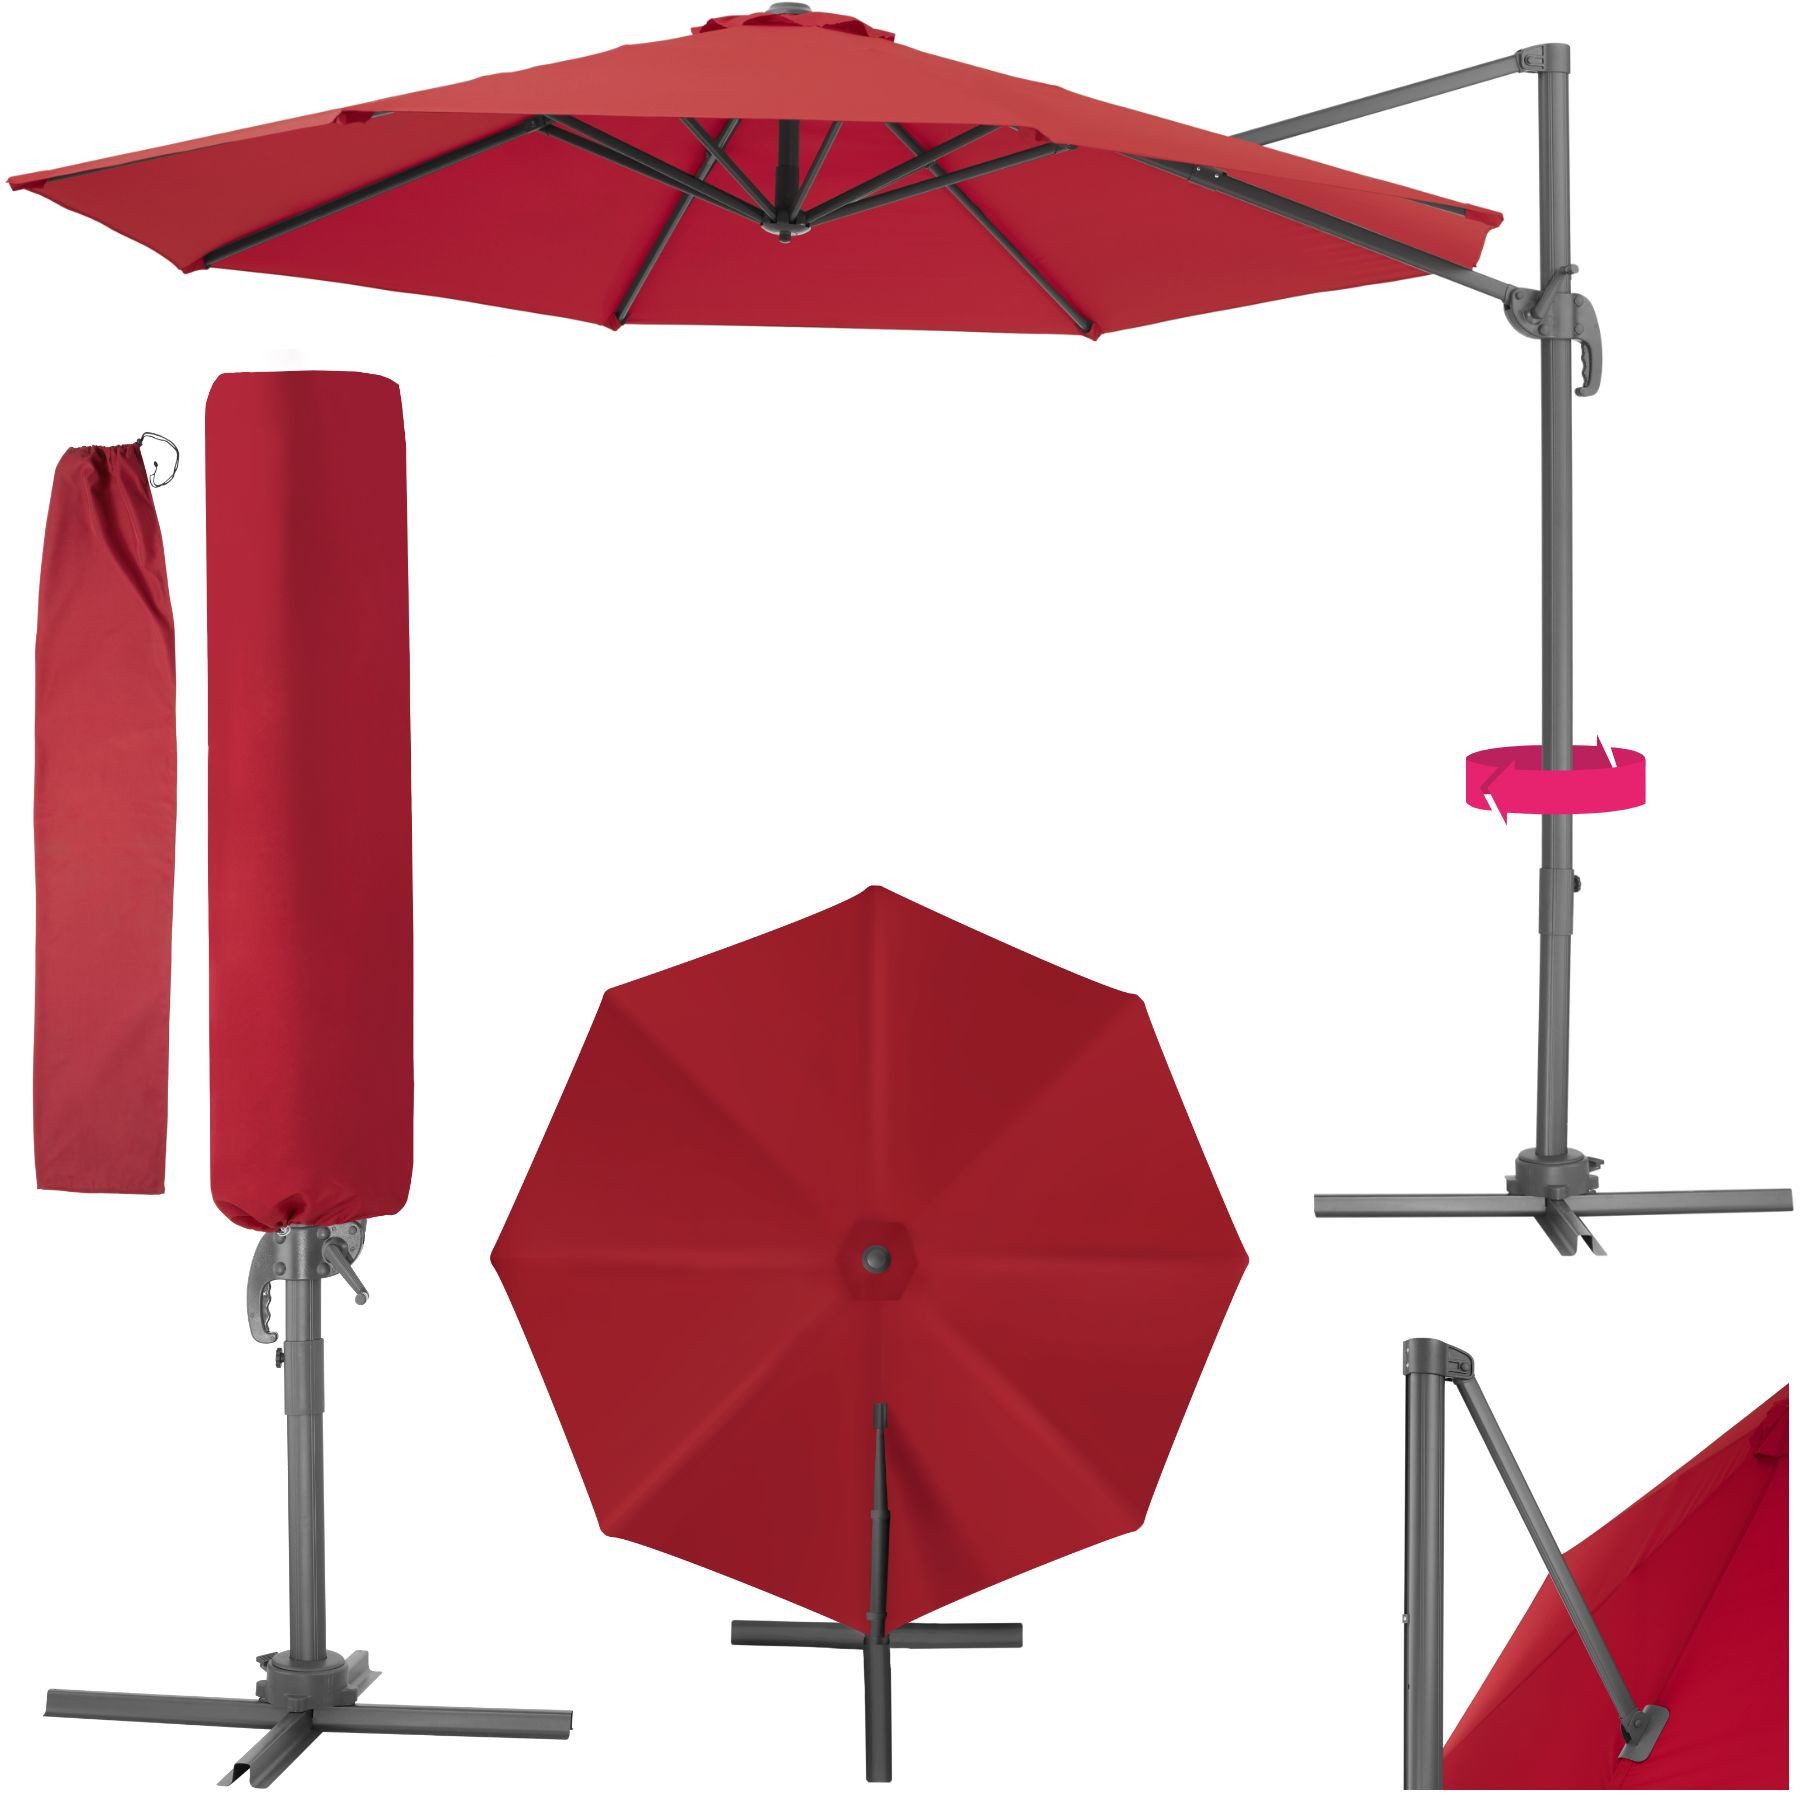 tectake Ampelschirm Daria, Set mit Schutzhülle für Terrasse oder Garten, Parasol inkl. Schutzhülle in Schrimfarbe, 360° drehbar